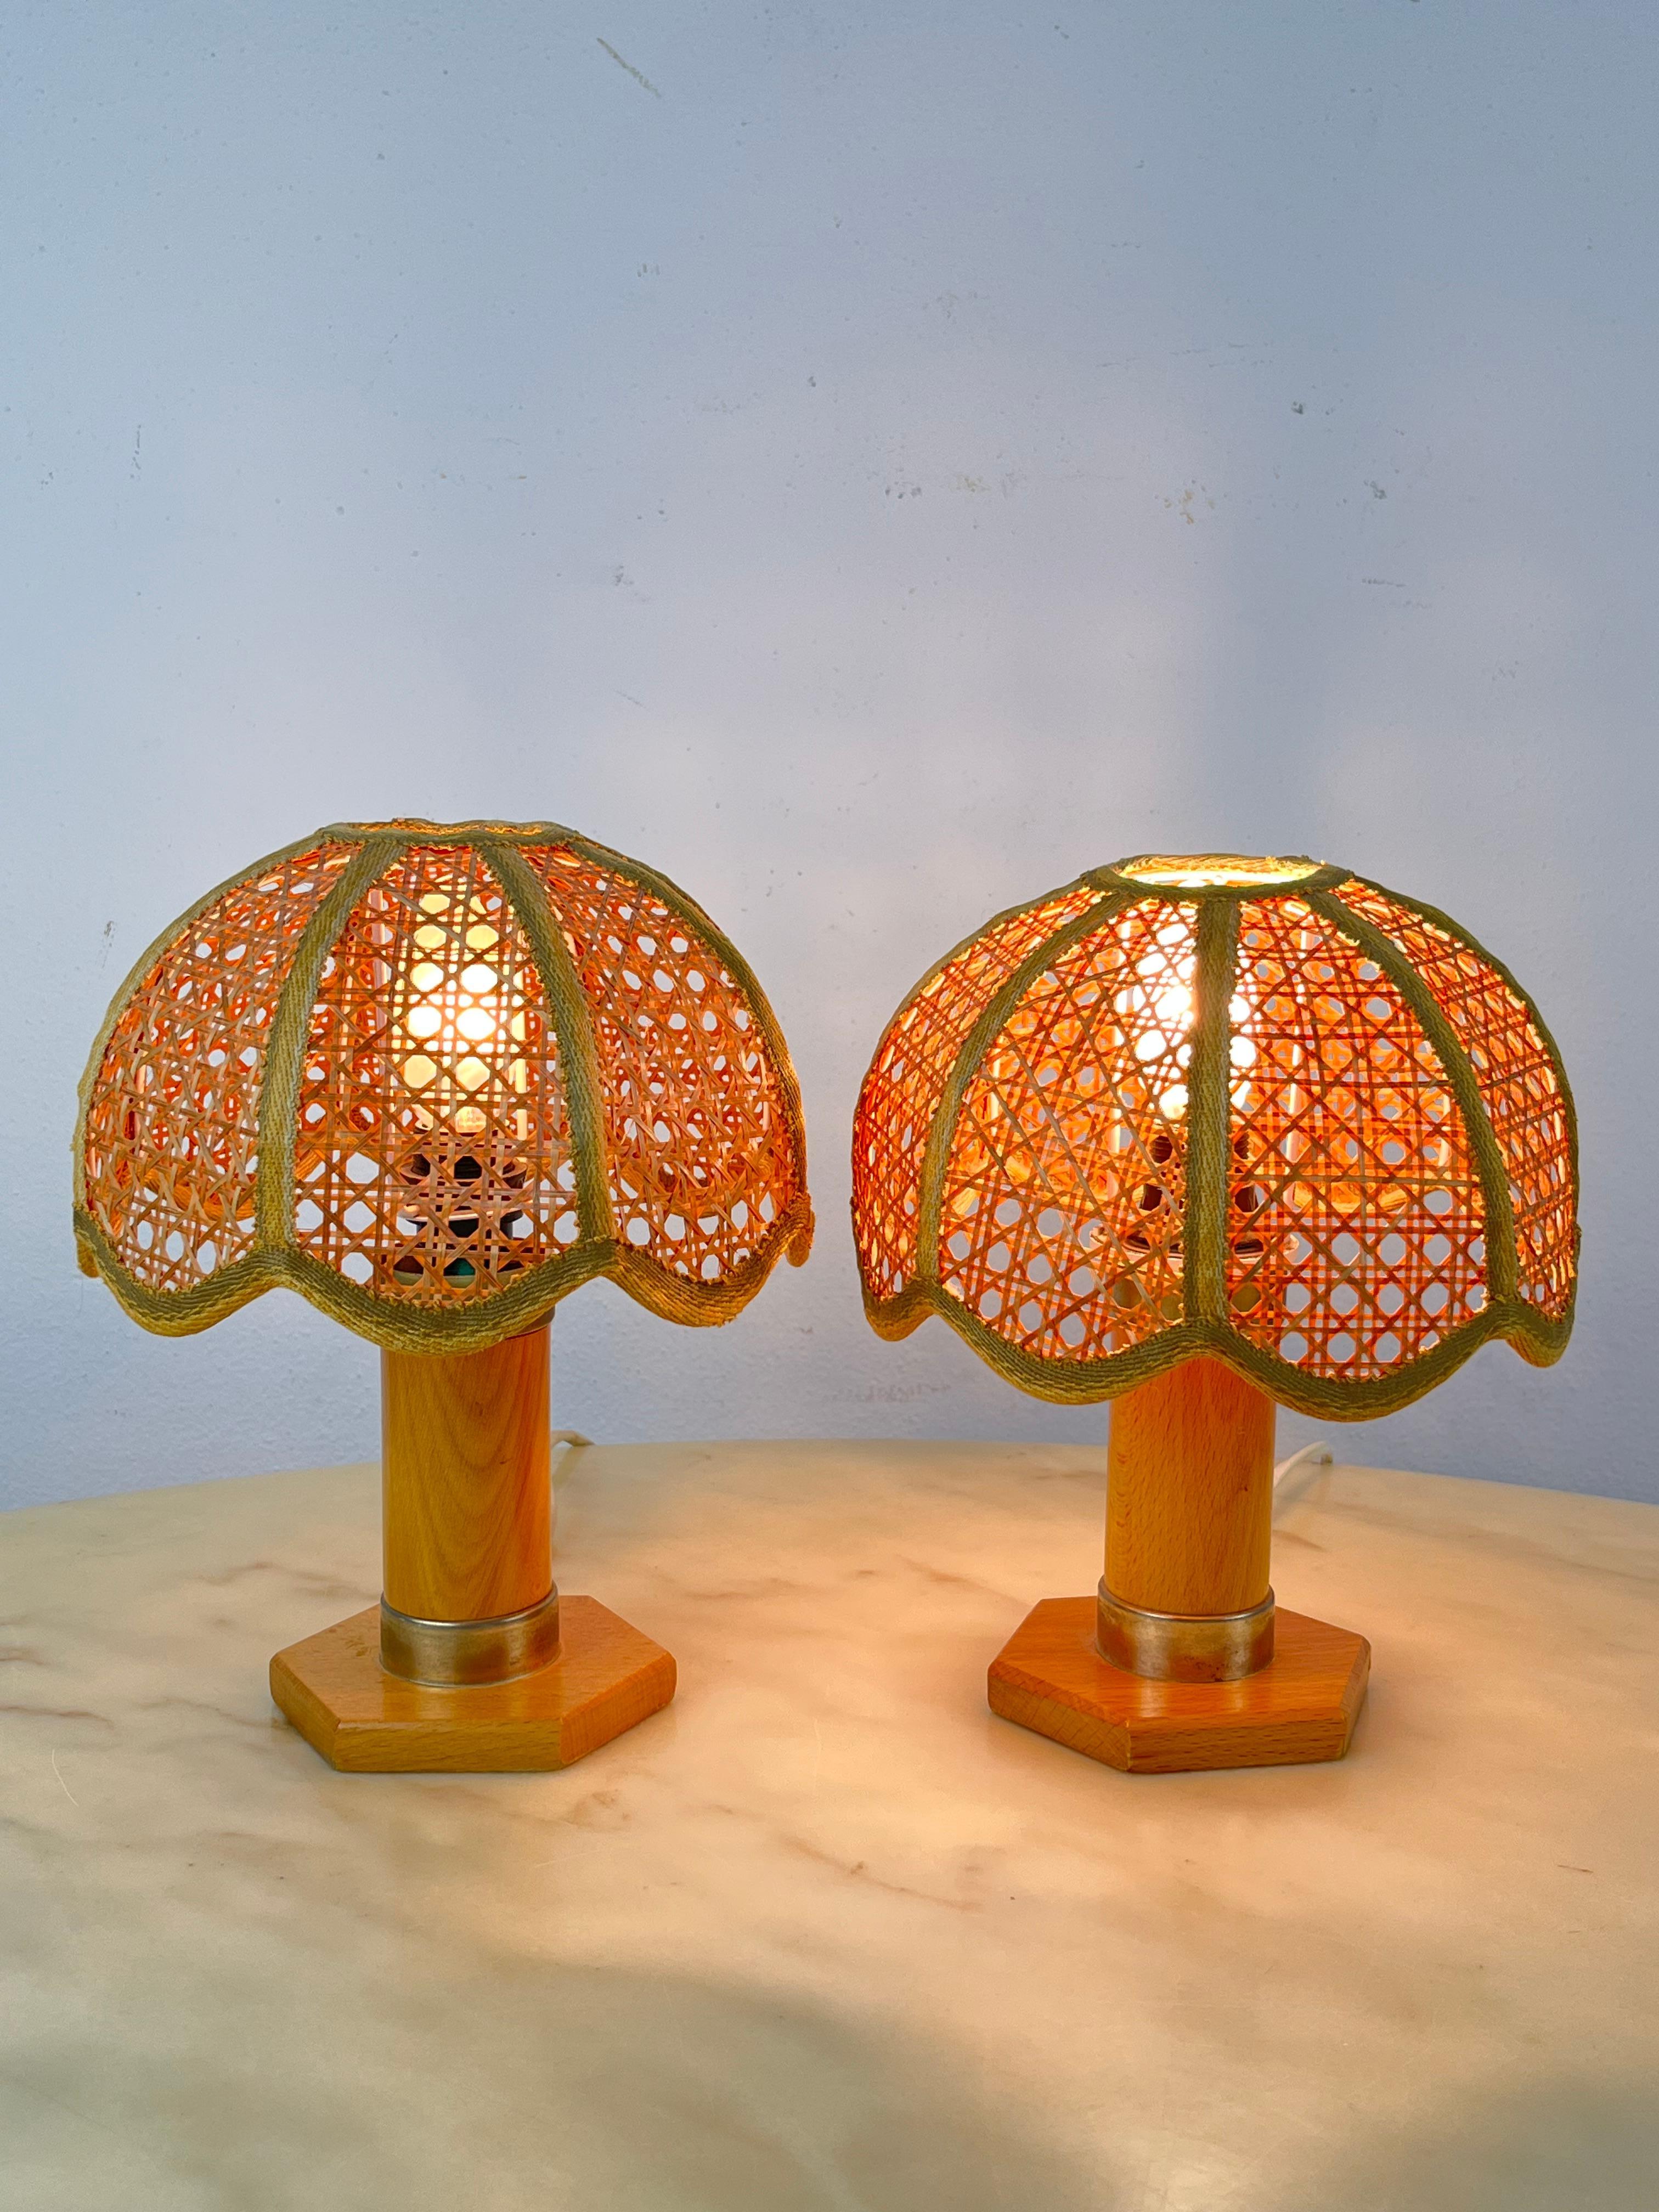 
Paire de lampes de chevet en rotin.
Fabriquées en Italie.
Intact et fonctionnel. Bonnes conditions.
Lampe E14.